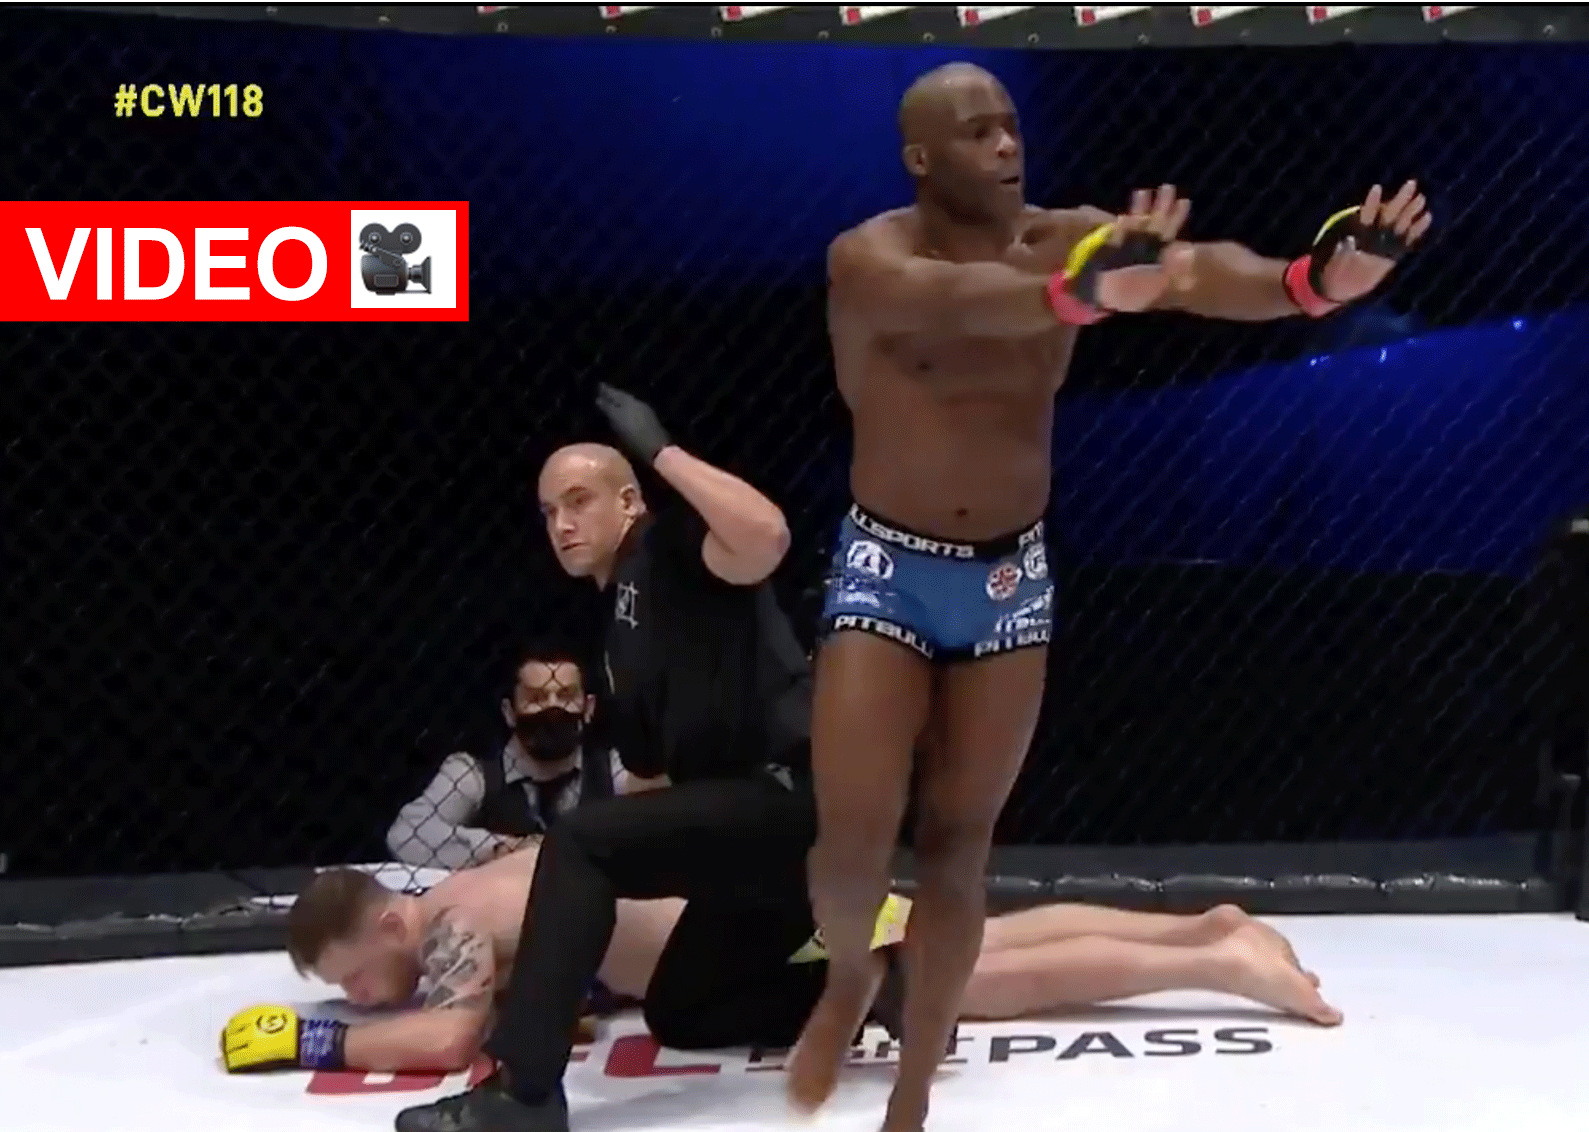 Bekijk de brute knock-out door ongeslagen MMA-kampioen (video)